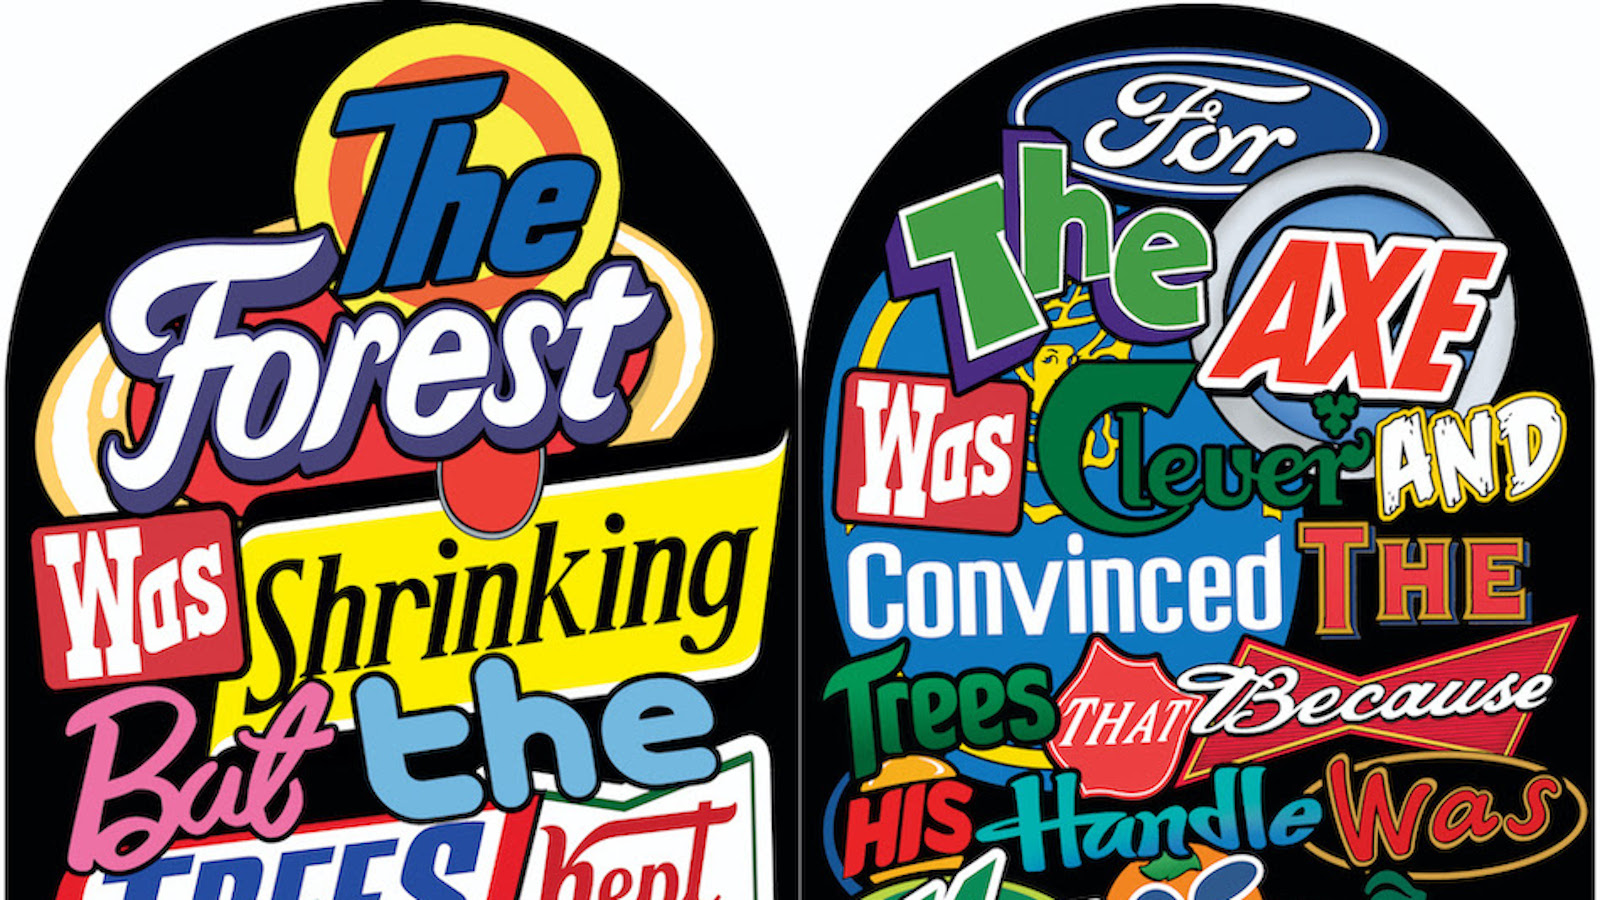 Kuvassa on kaksi pyöreällä yläosalla olevaa taulua, joissa on molemmissa eri firmojen logoja.